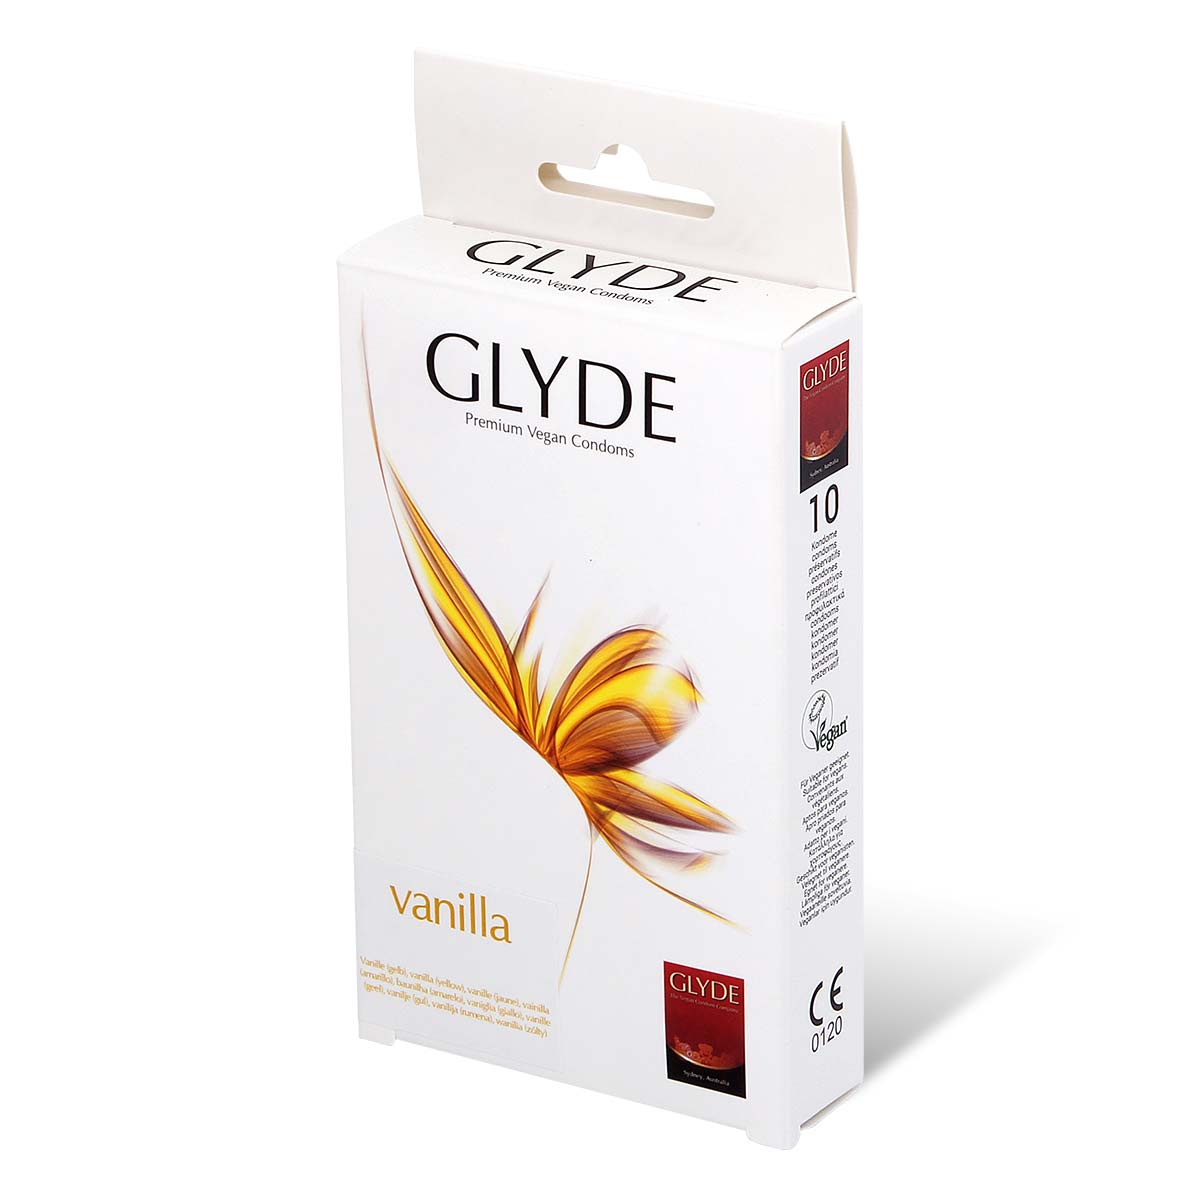 Glyde 格蕾迪 素食主义安全套 香草香 10 片装 乳胶安全套-p_1